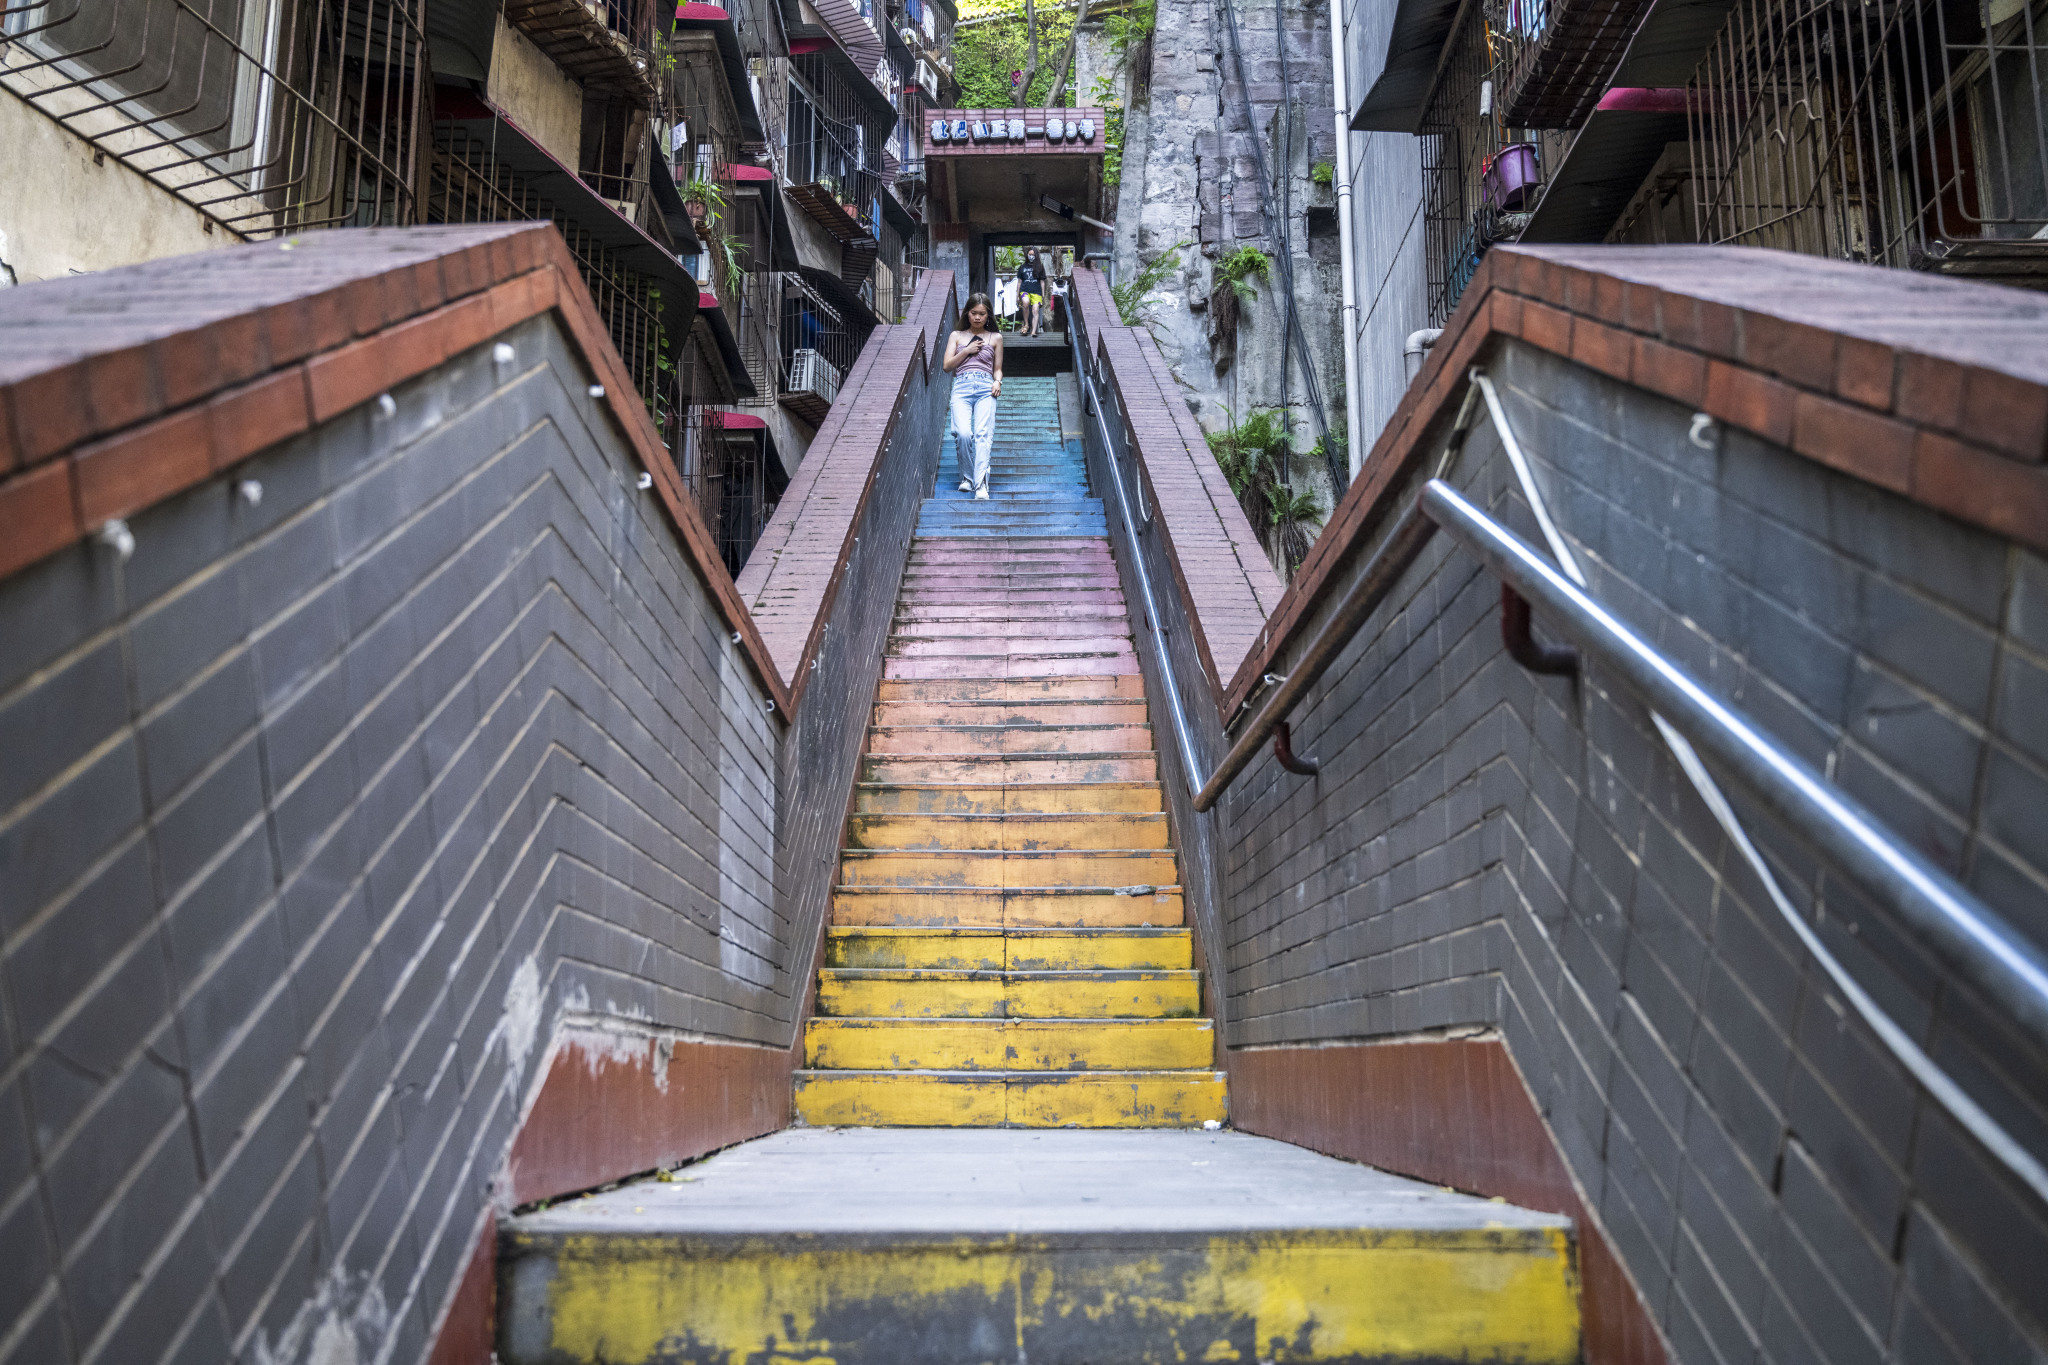 彩虹楼梯位于重庆渝中区枇杷山正街的居民楼间,高约20米,共有50